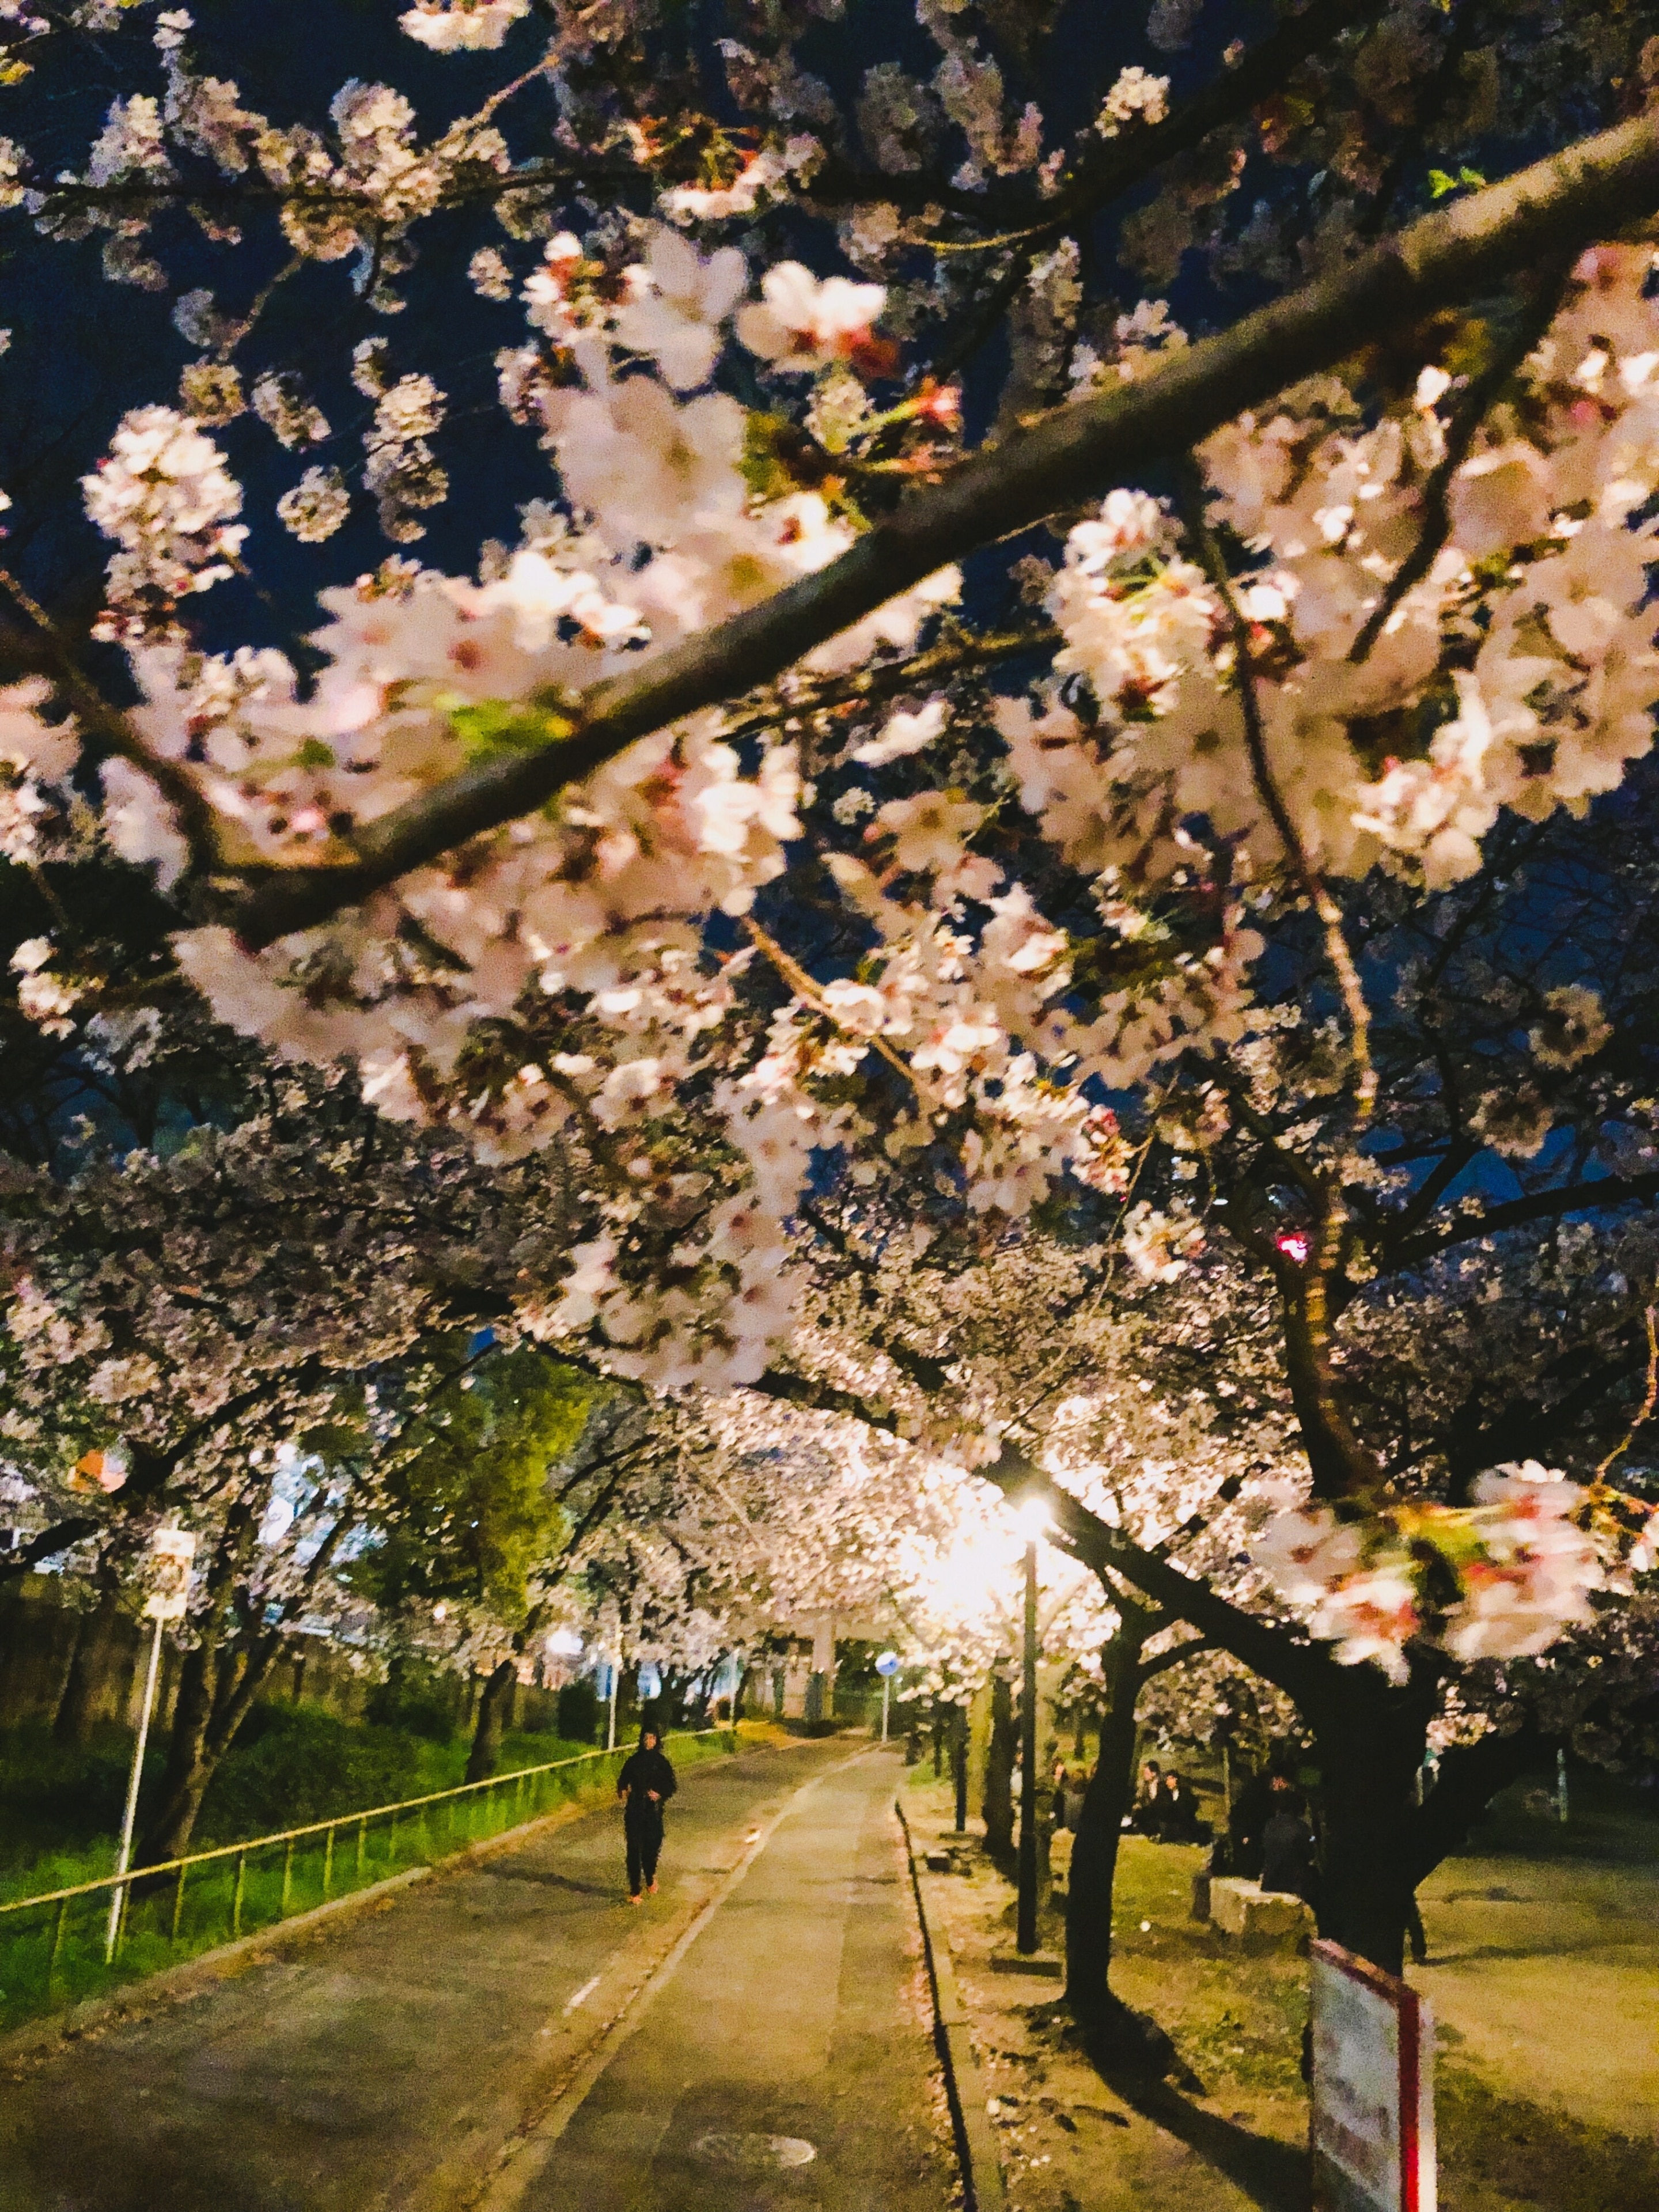 Full bloom season now for Sakura in Osaka, Japan